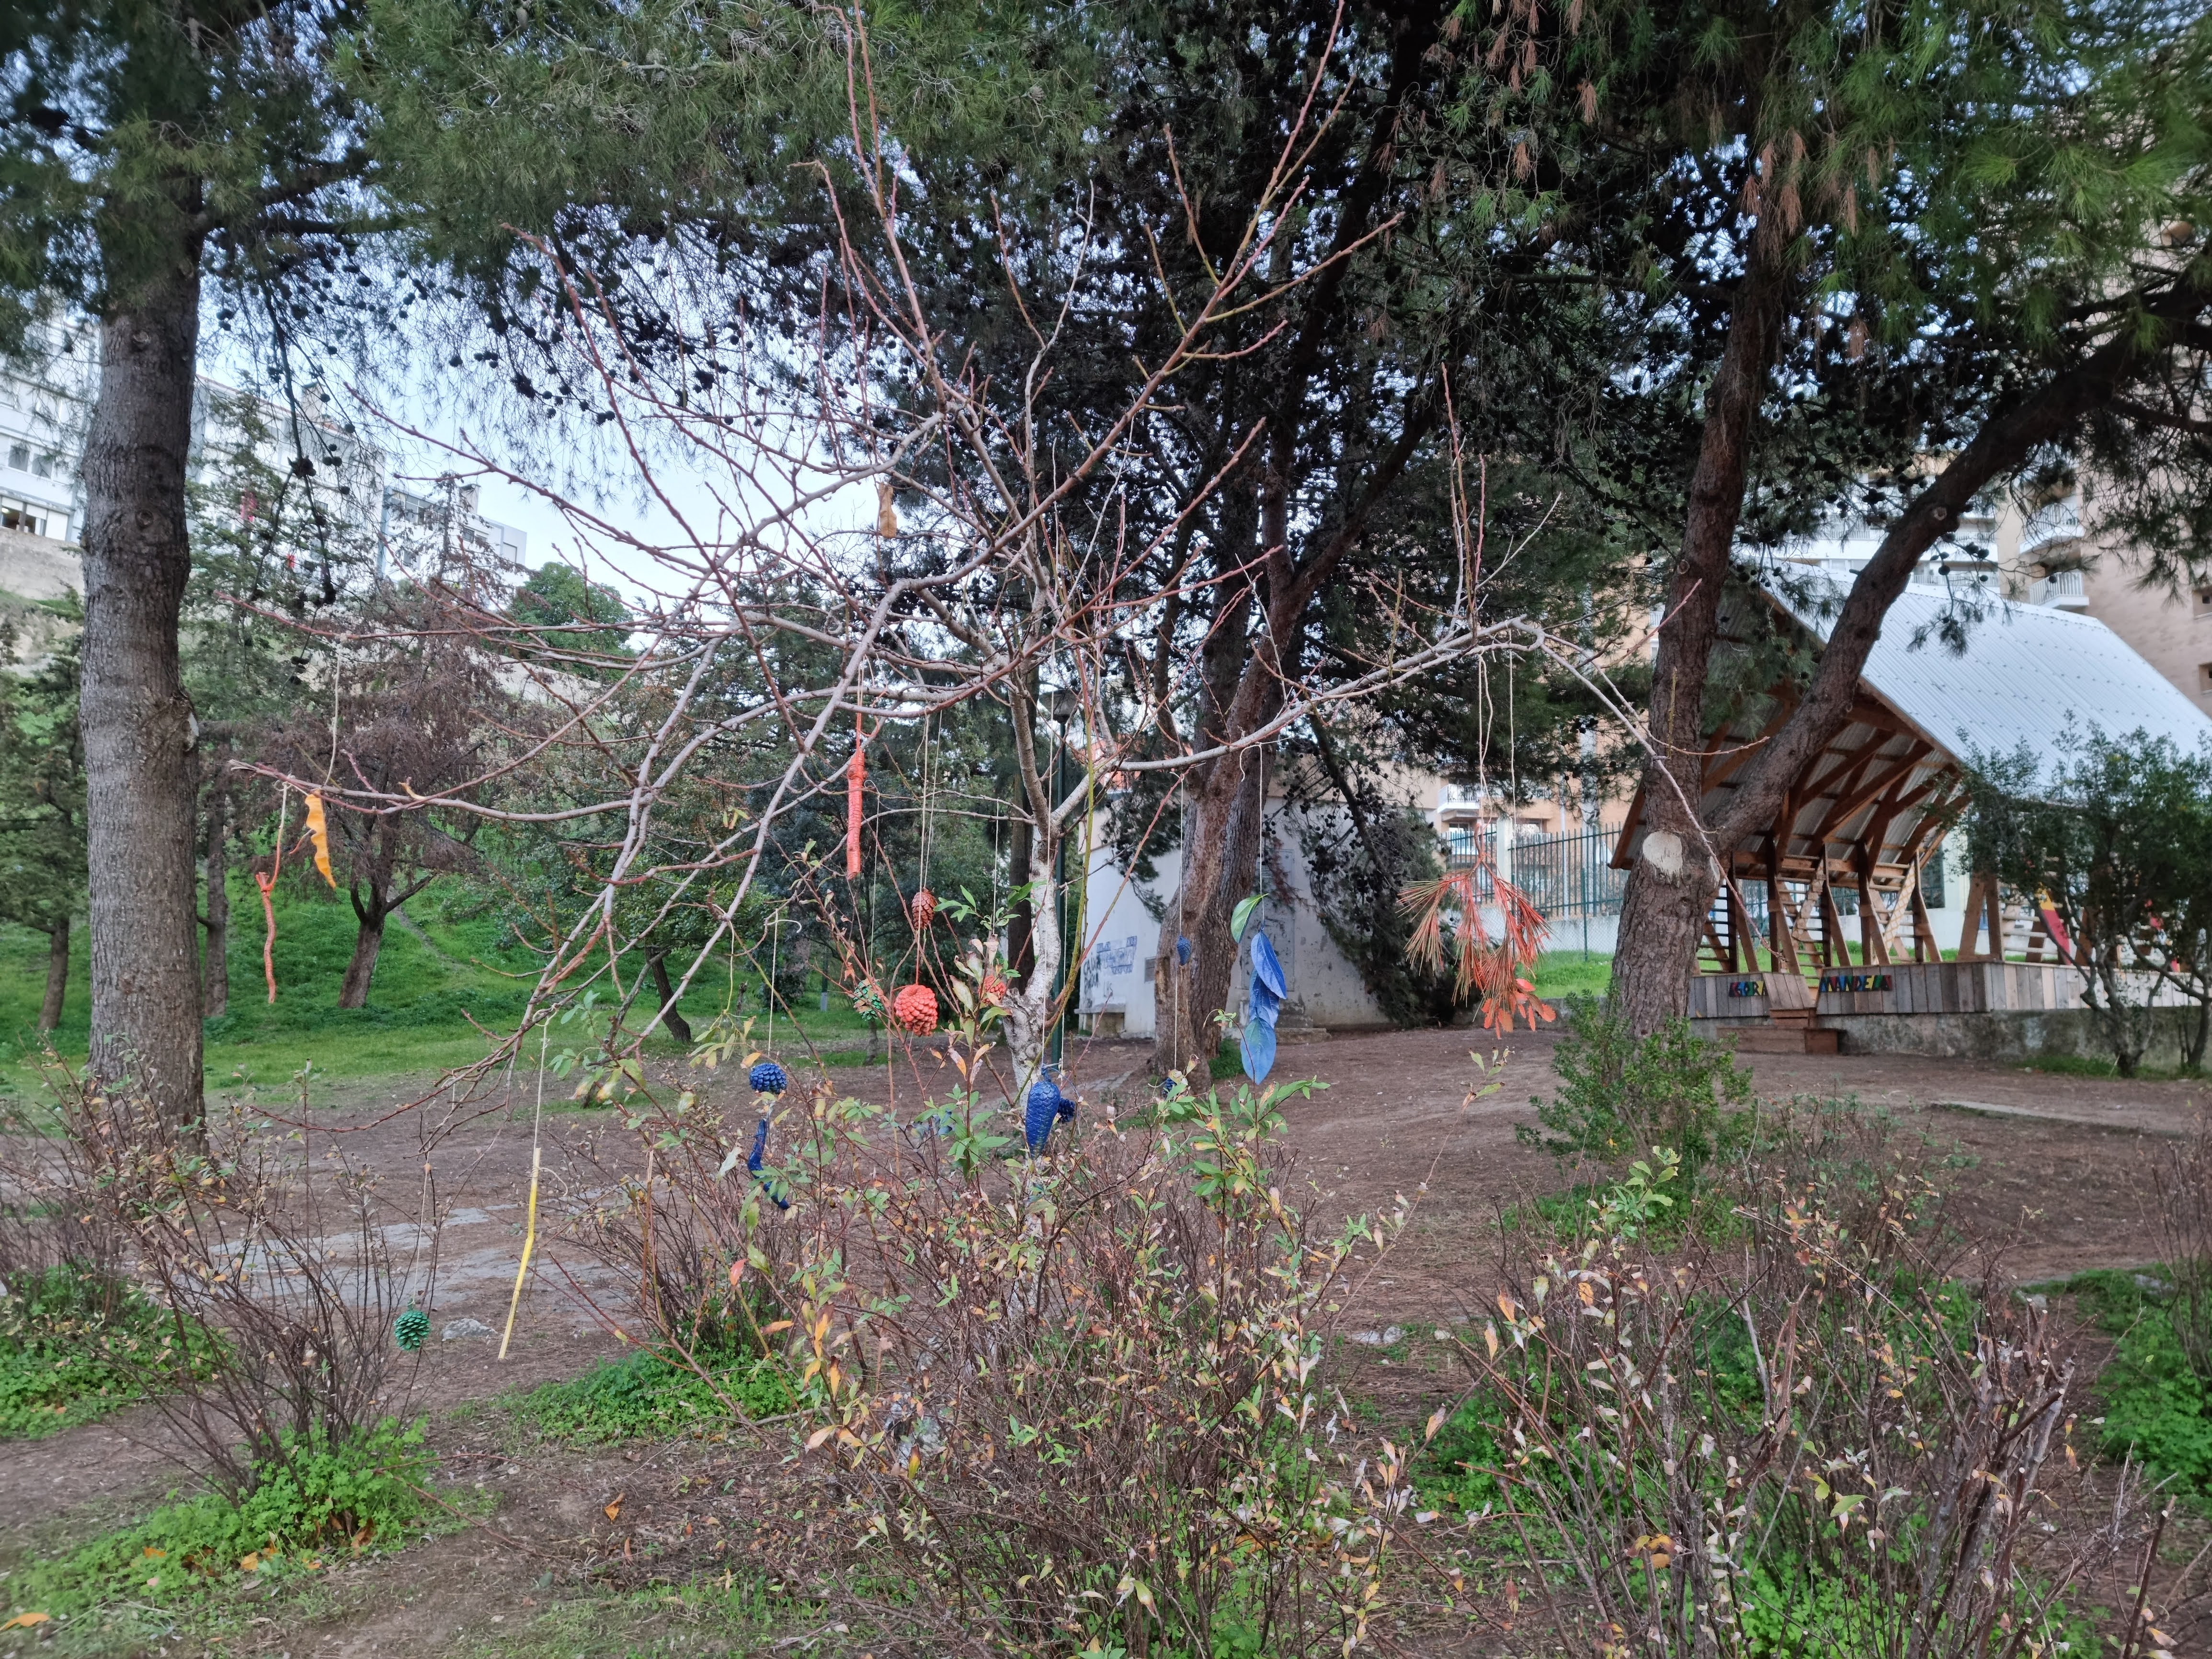 ÁRVORE DE NATAL LAND ART - Reutilização de materiais naturais encontrados nos espaços verdes da escola para criação artística de uma árvore de natal